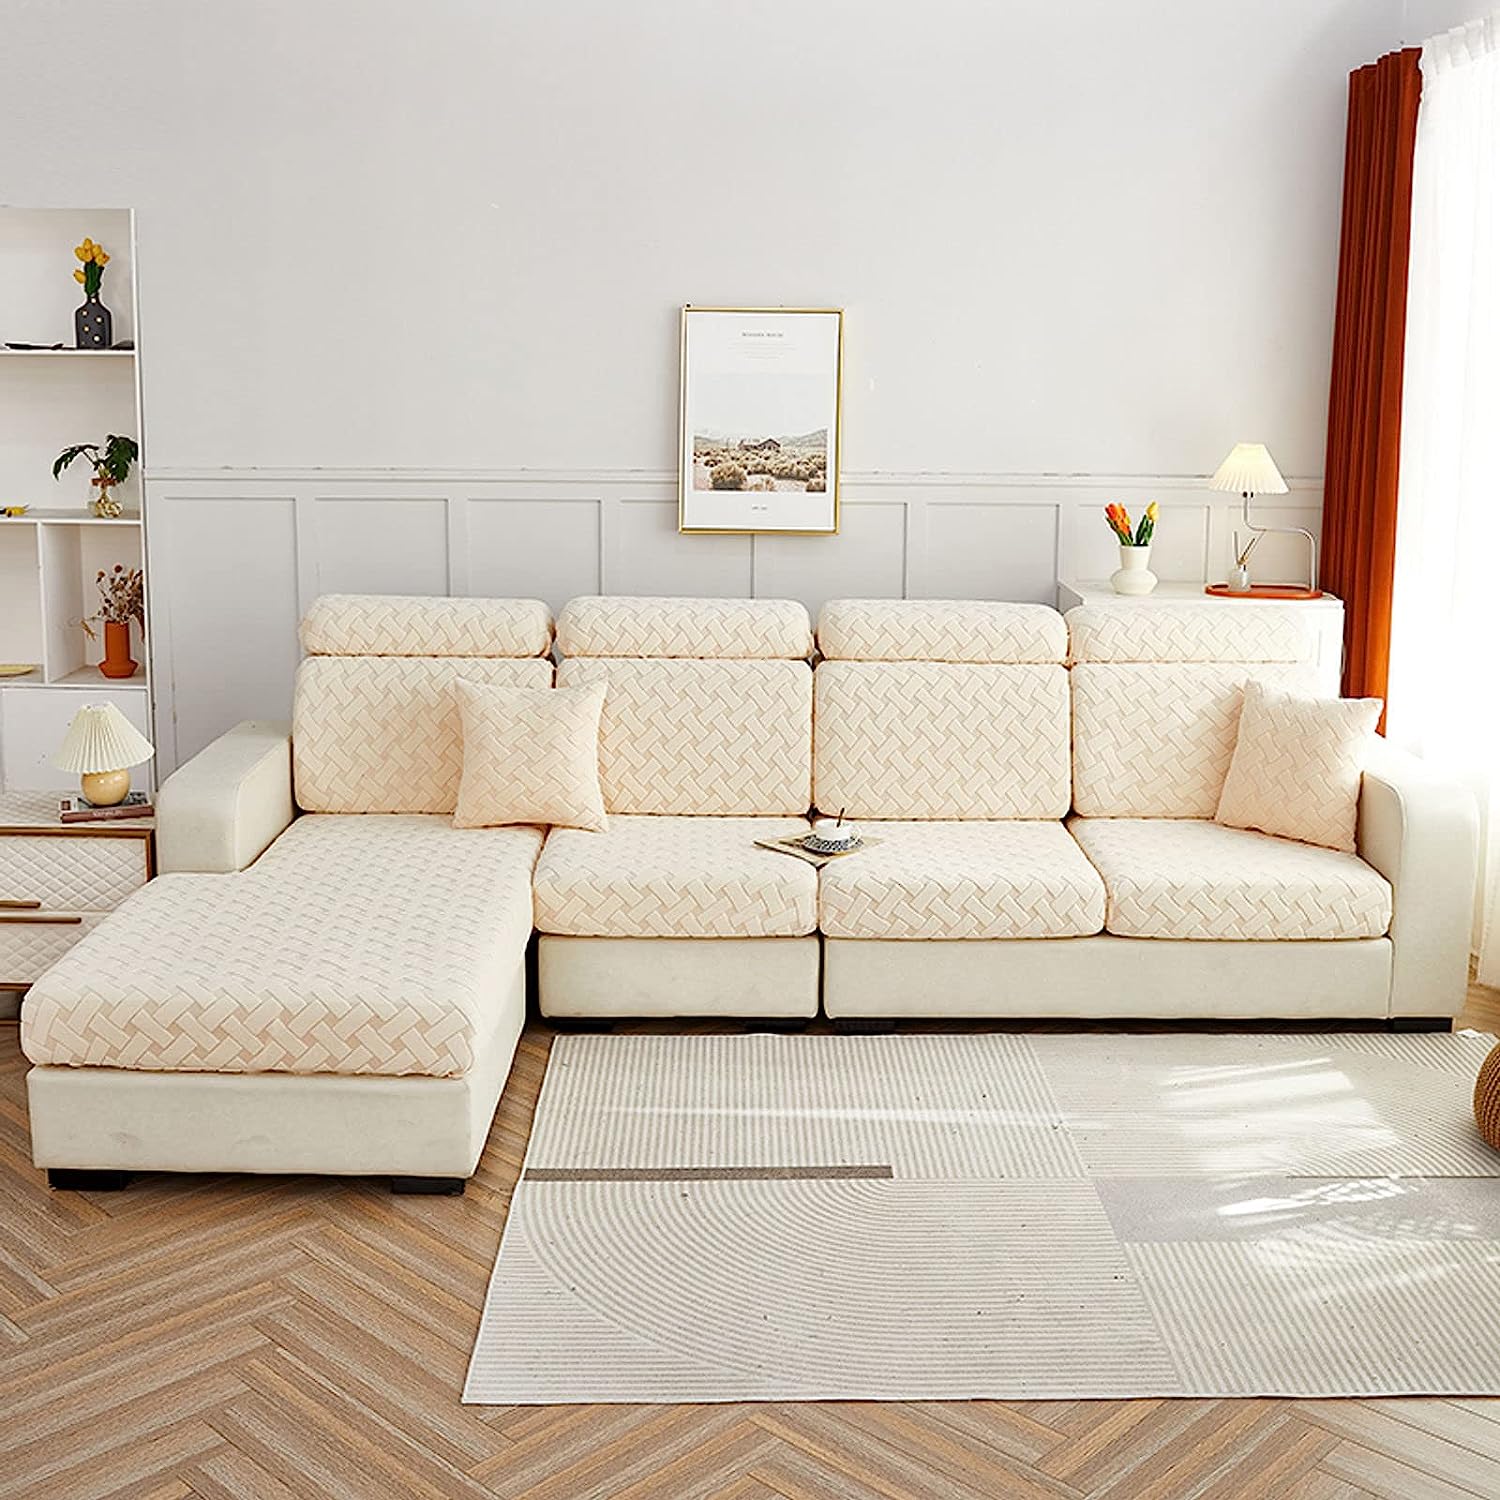 Sofa Cushion Cover - Pebble - Soft Elastic Jacquard Weave